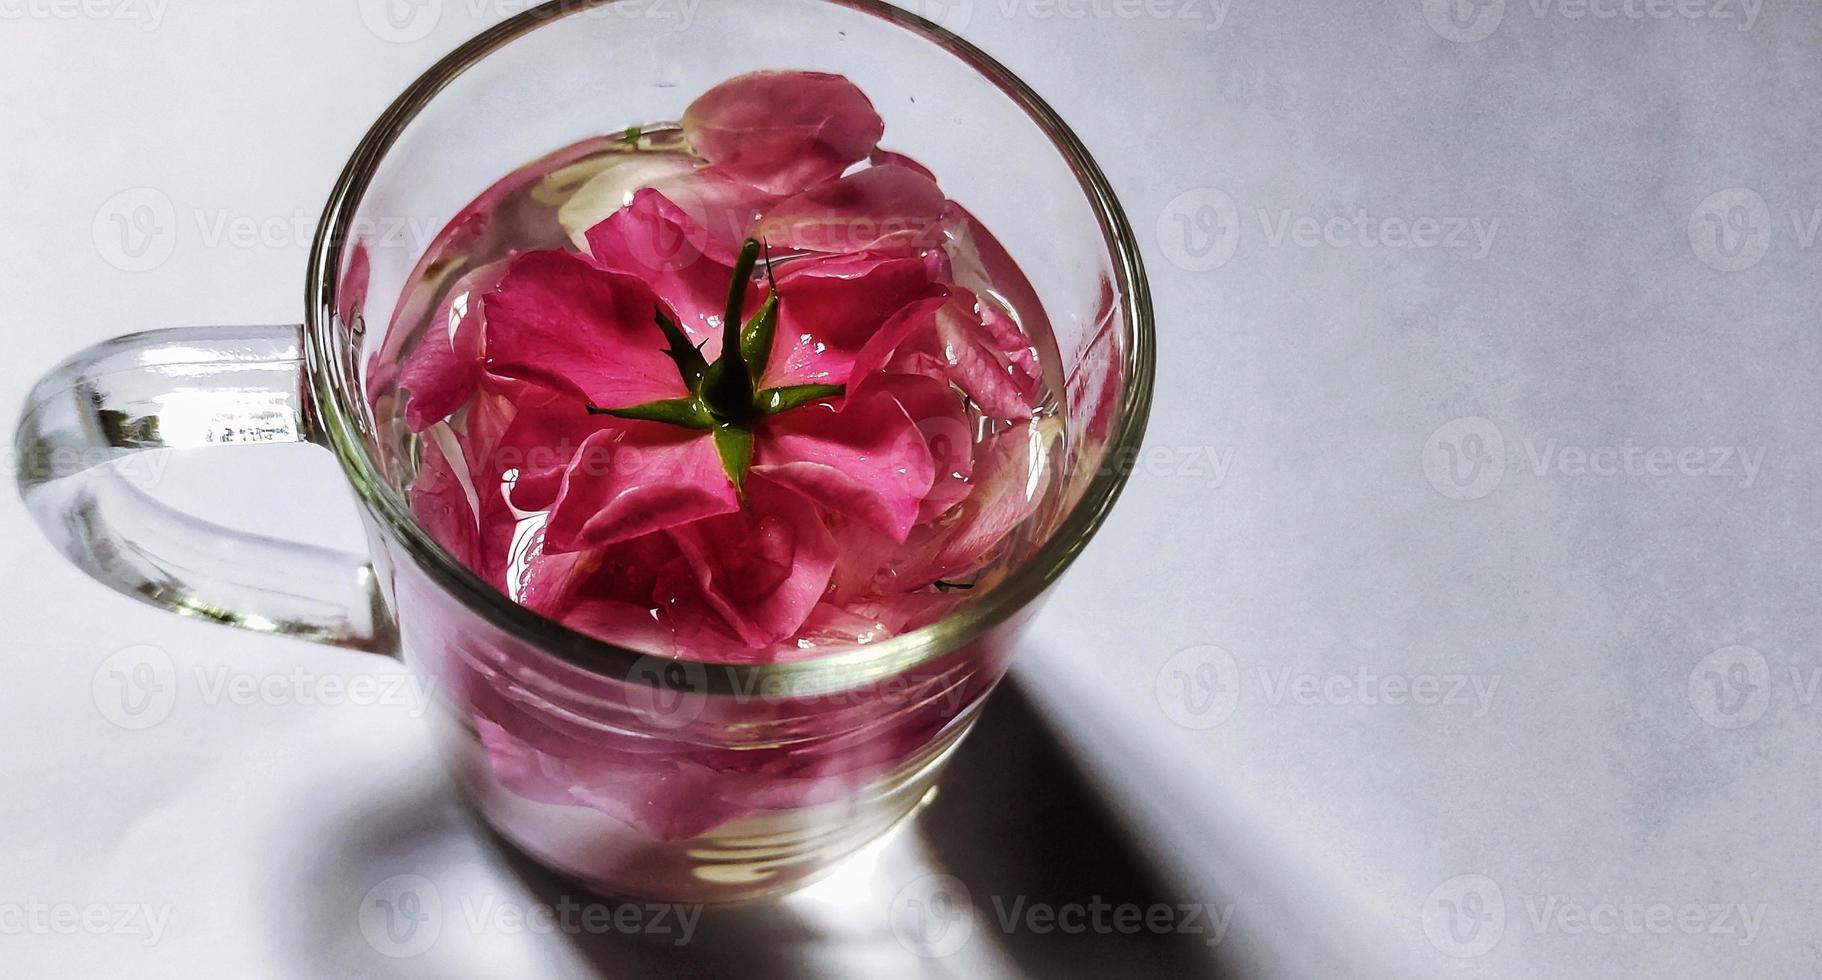 vista de cerca de la flor rosa chinensis en un vaso de vidrio lleno de agua, ilustración del concepto romántico foto